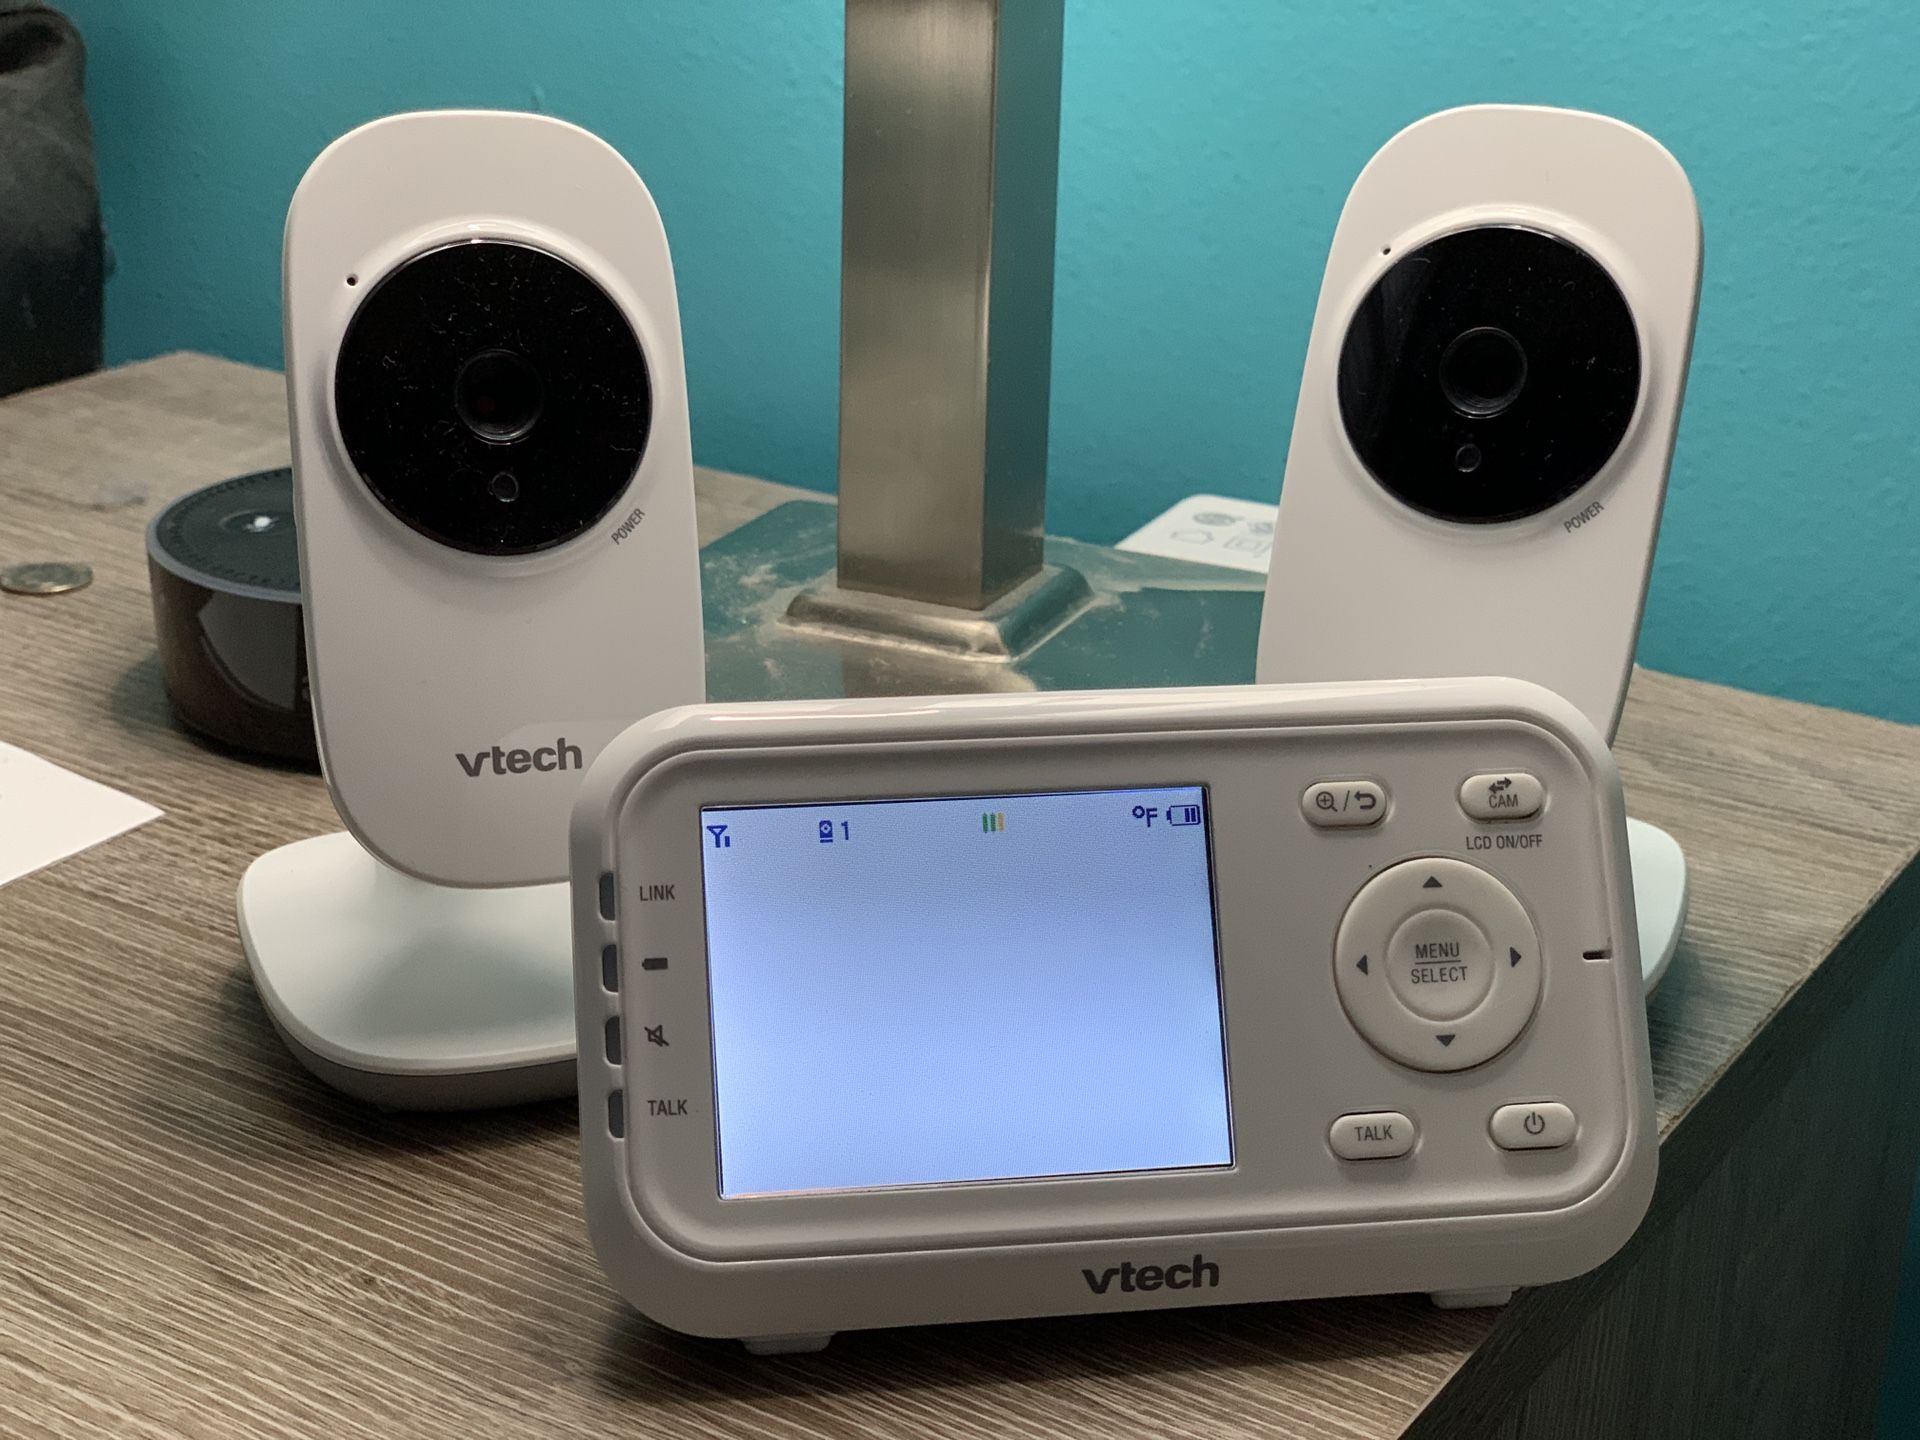 V-tech cameras for kids room